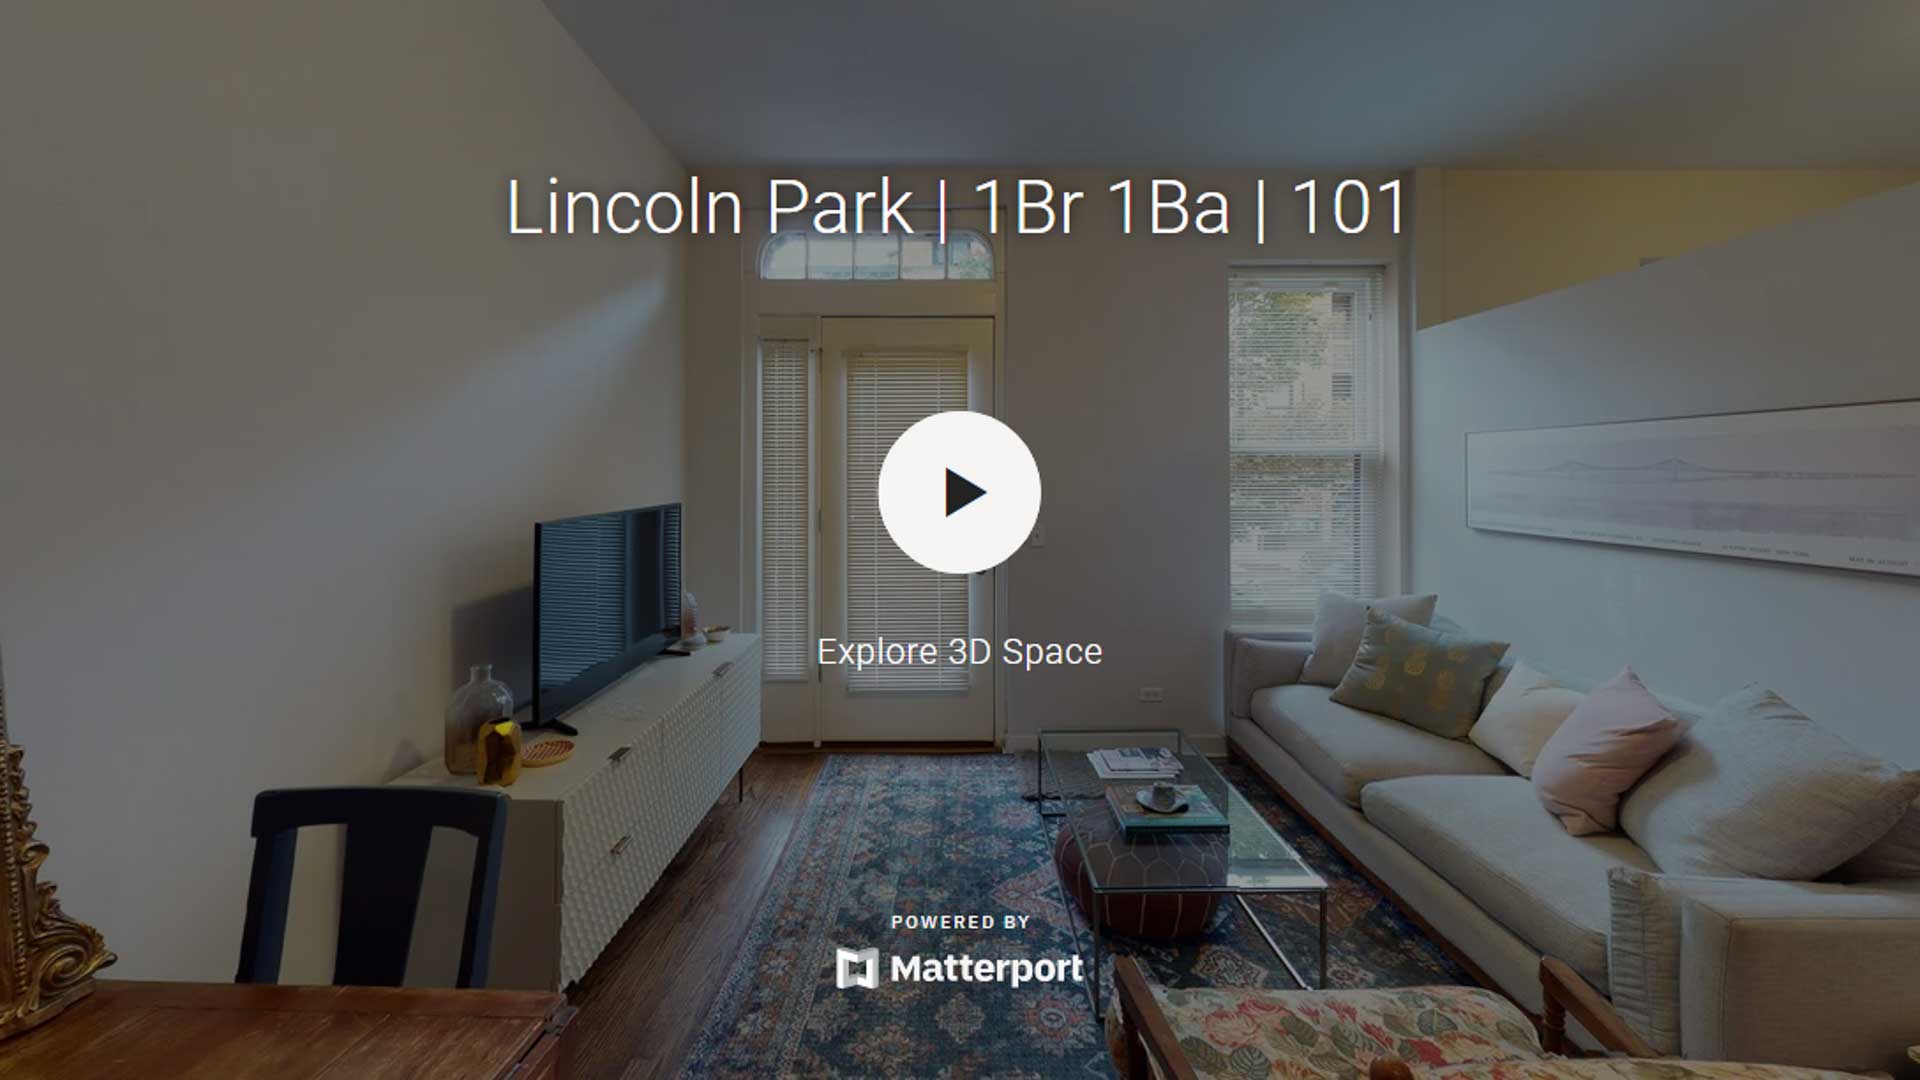 Lincoln Park | 1Br 1Ba | 101